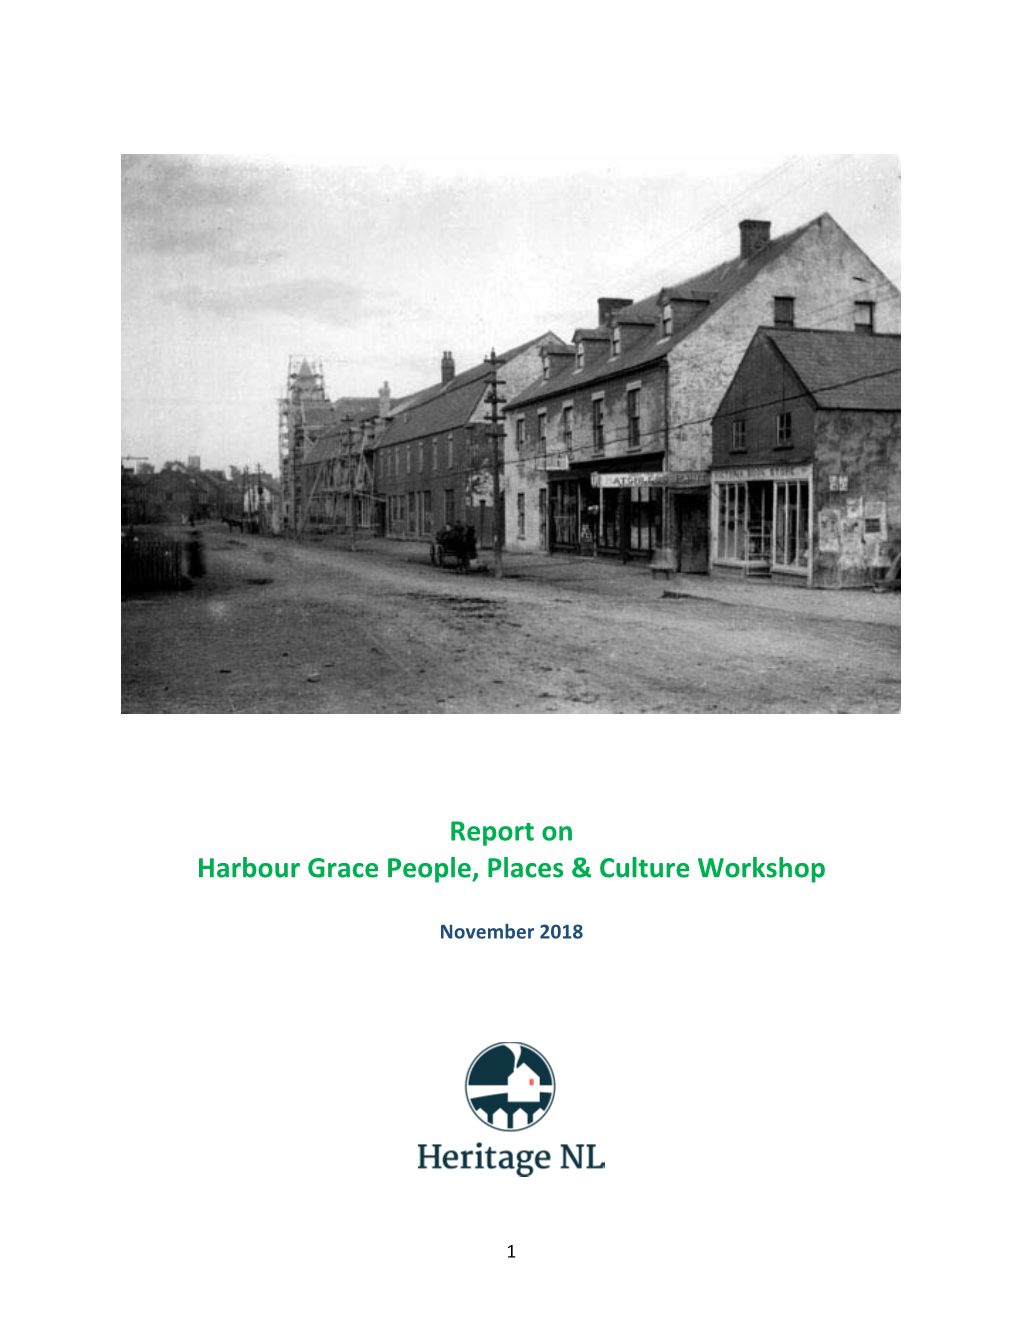 Report on Harbour Grace People, Places & Culture Workshop